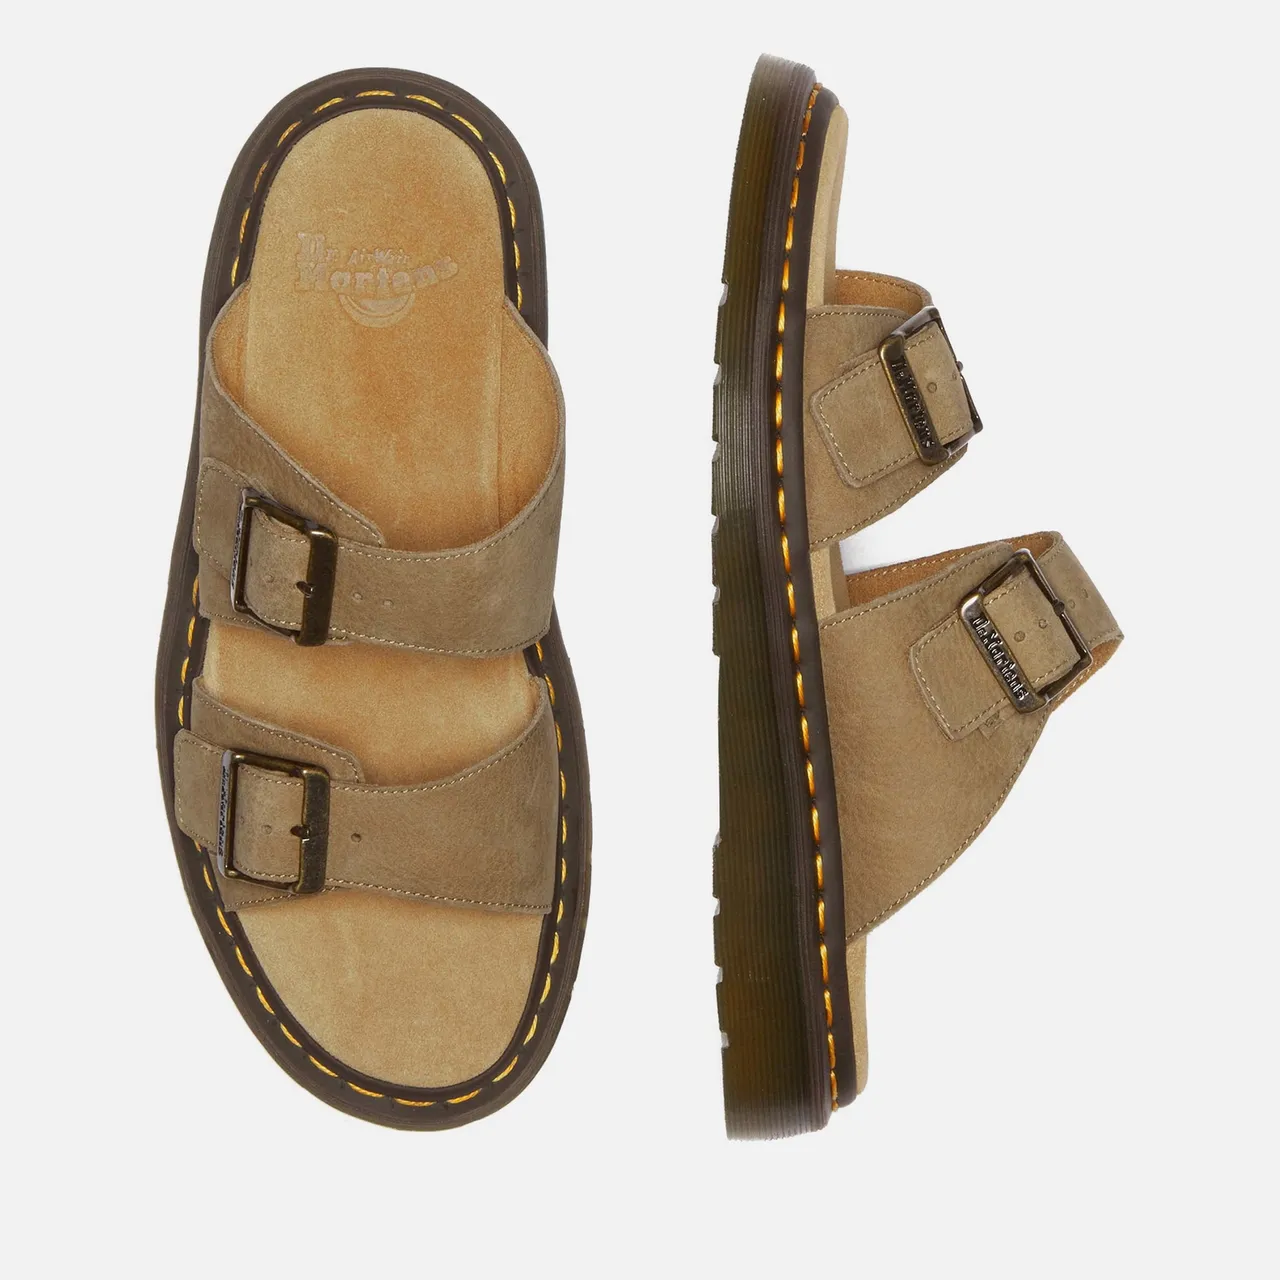 Dr. Martens Men's Josef Double Strap Leather Sandals